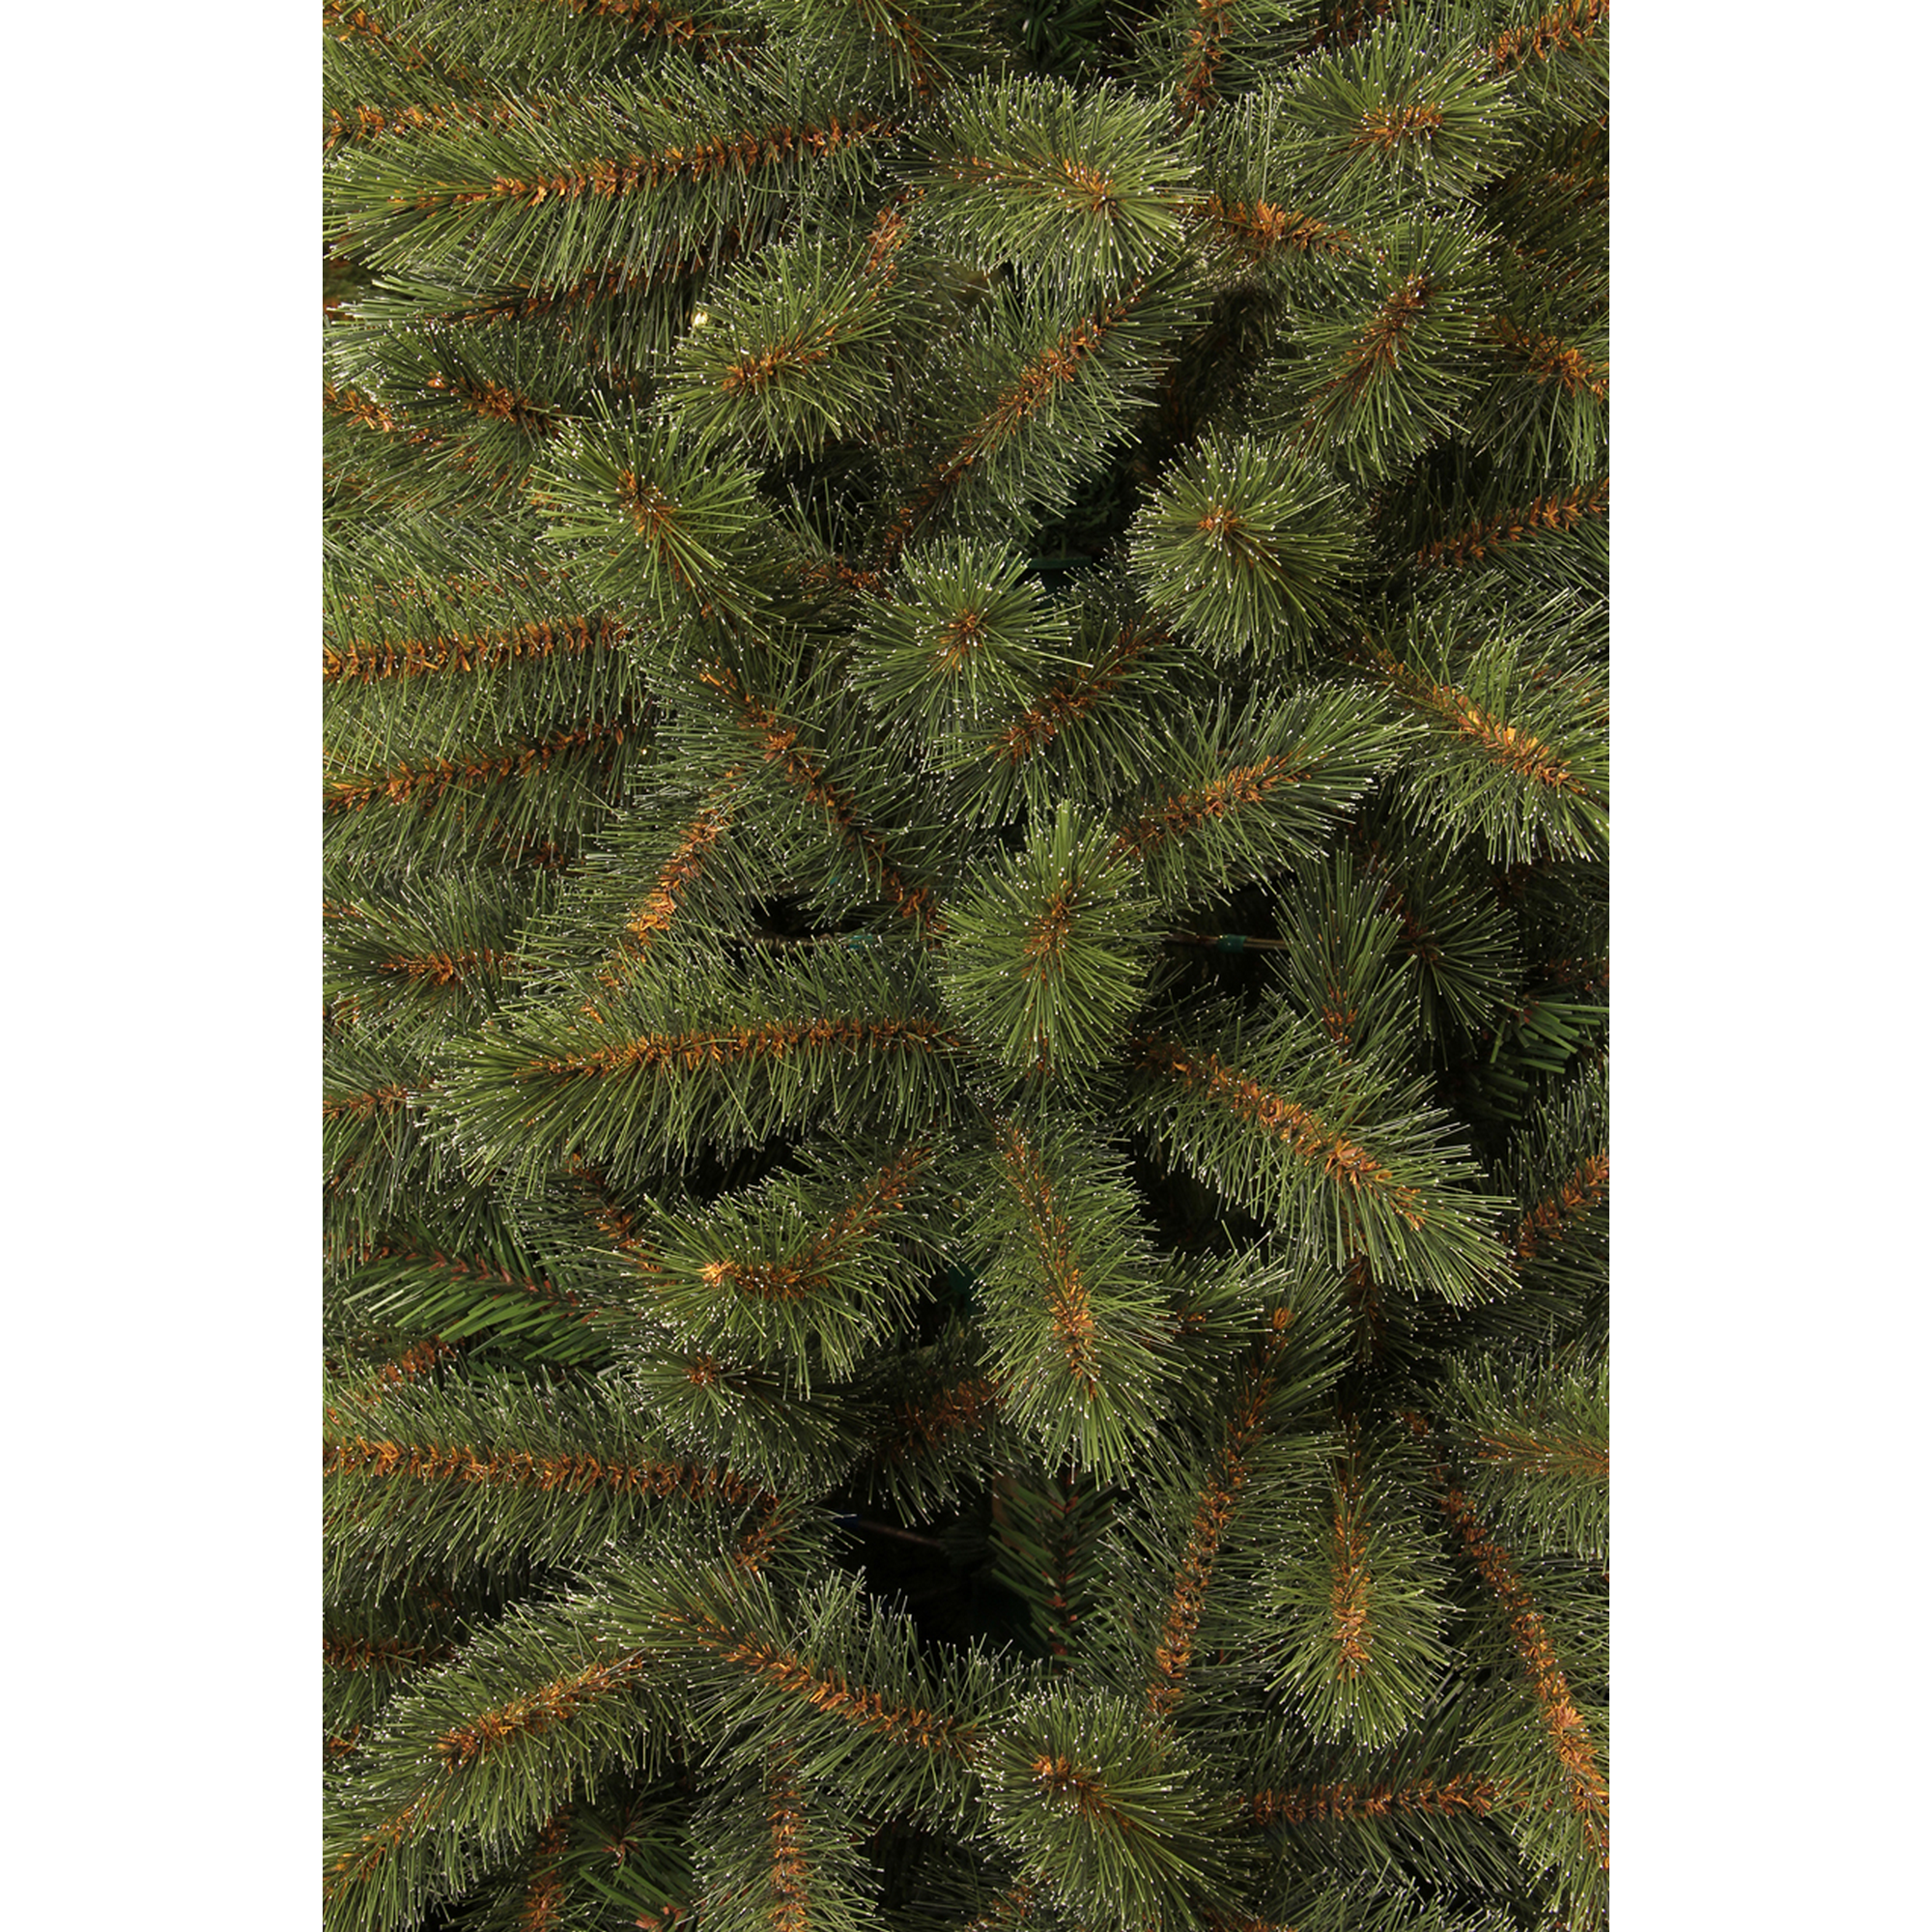 Künstlicher Weihnachtsbaum 'Vail' grün 185 cm + product picture